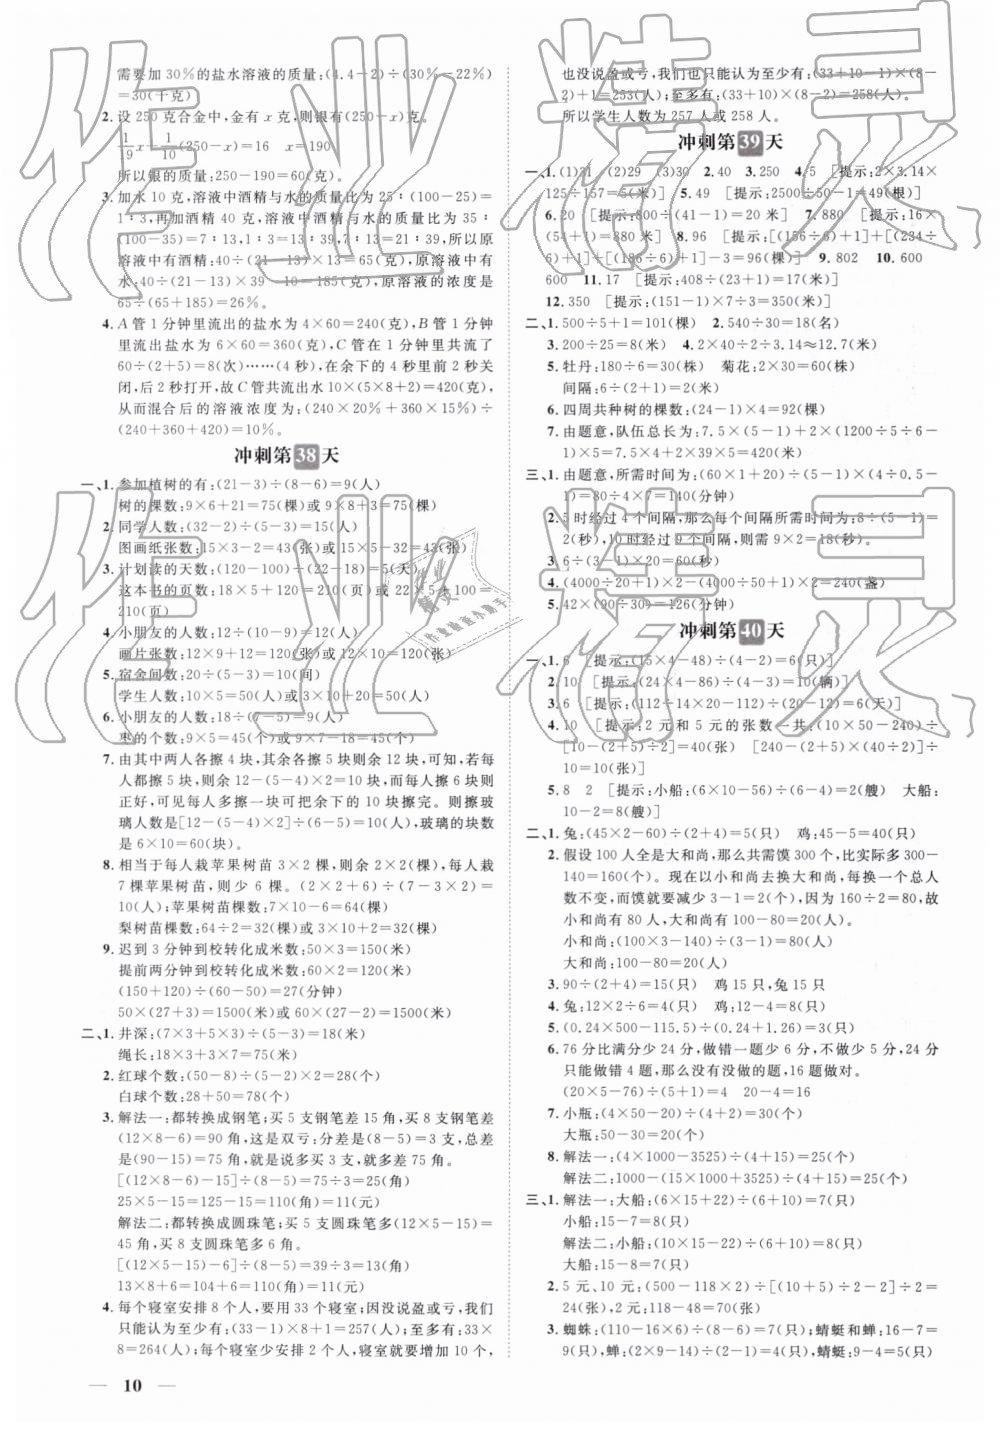 2019年小升初冲刺48天数学 第10页